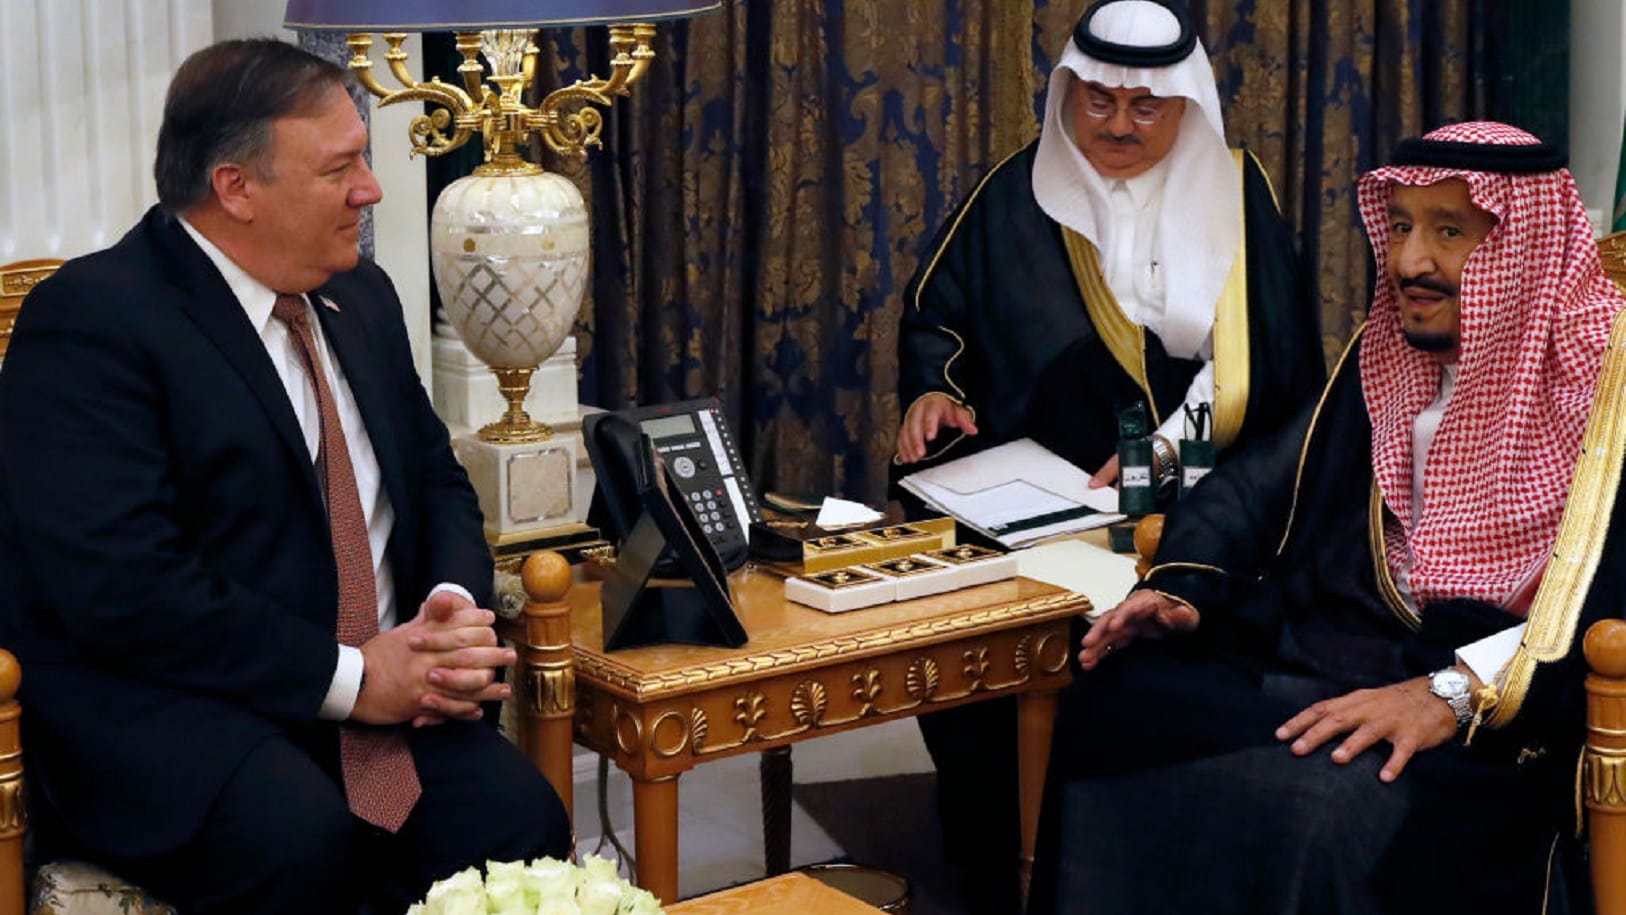 الملك سلمان يلتقي وزير الخارجية الأمريكي في الرياض